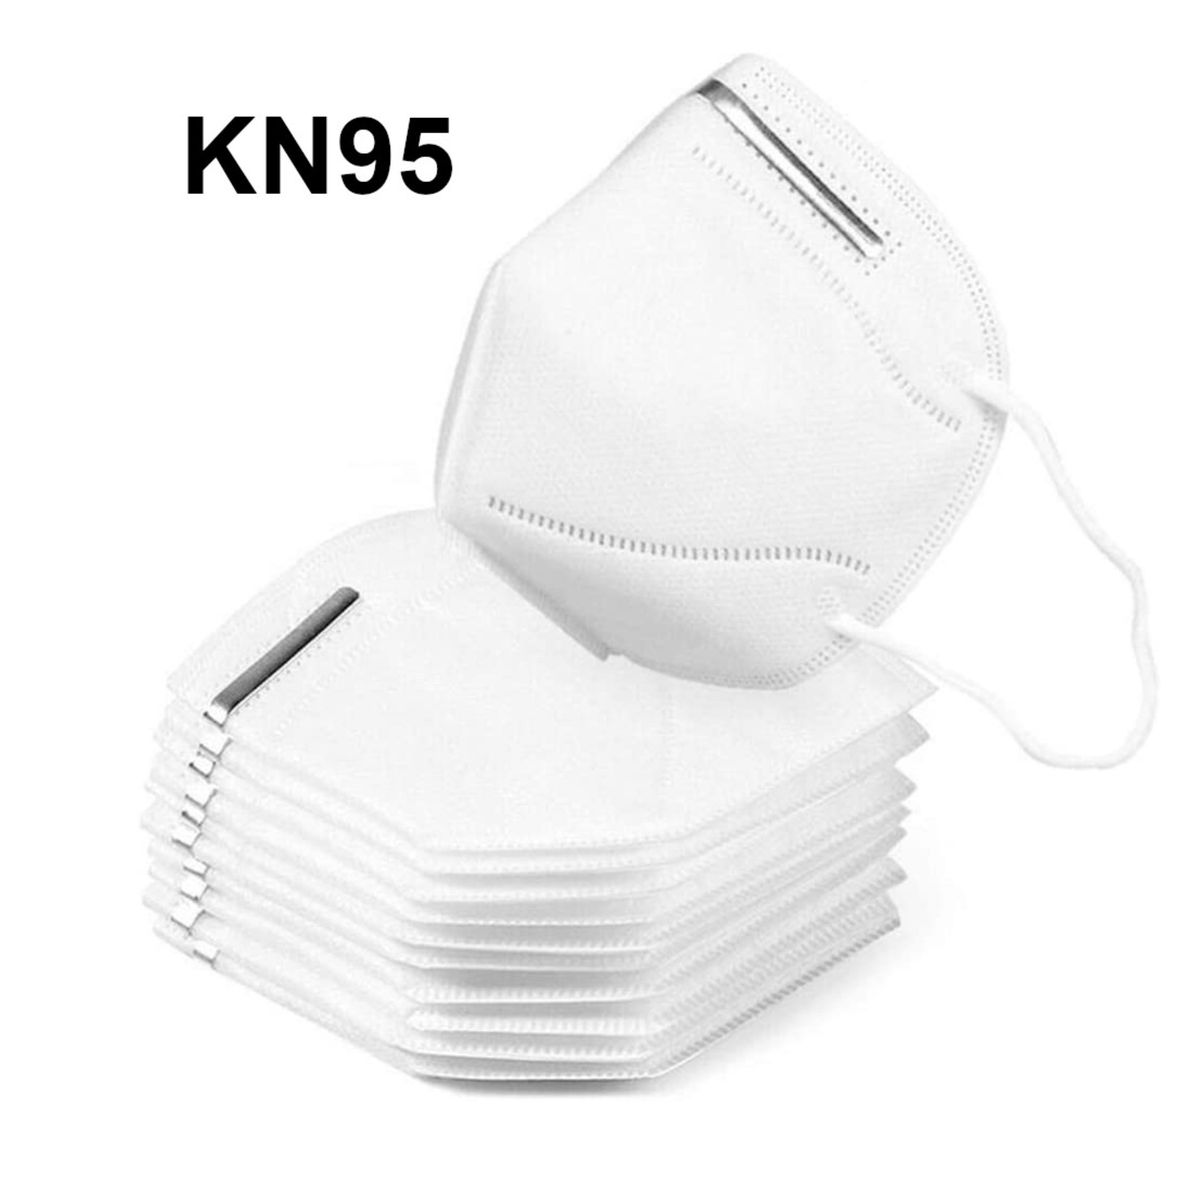 20x Mundschutz Atemschutz Maske KN95 95% Filterleistung FPP2 vergleichbar 4-lagig